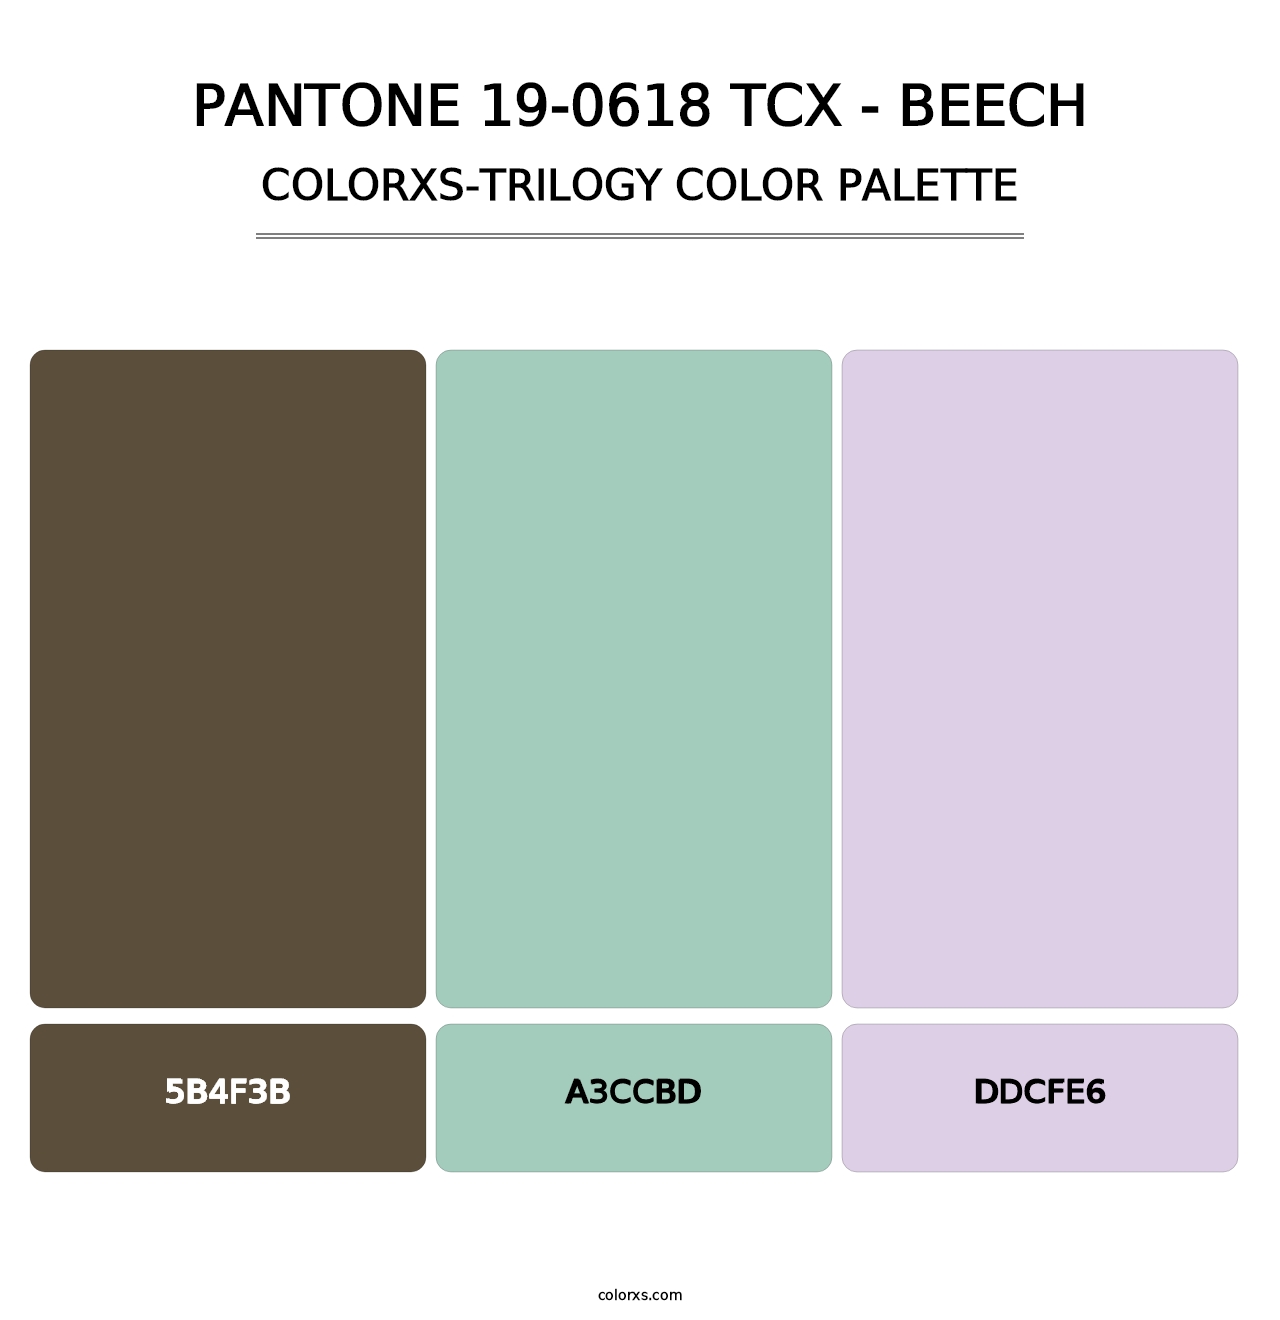 PANTONE 19-0618 TCX - Beech - Colorxs Trilogy Palette